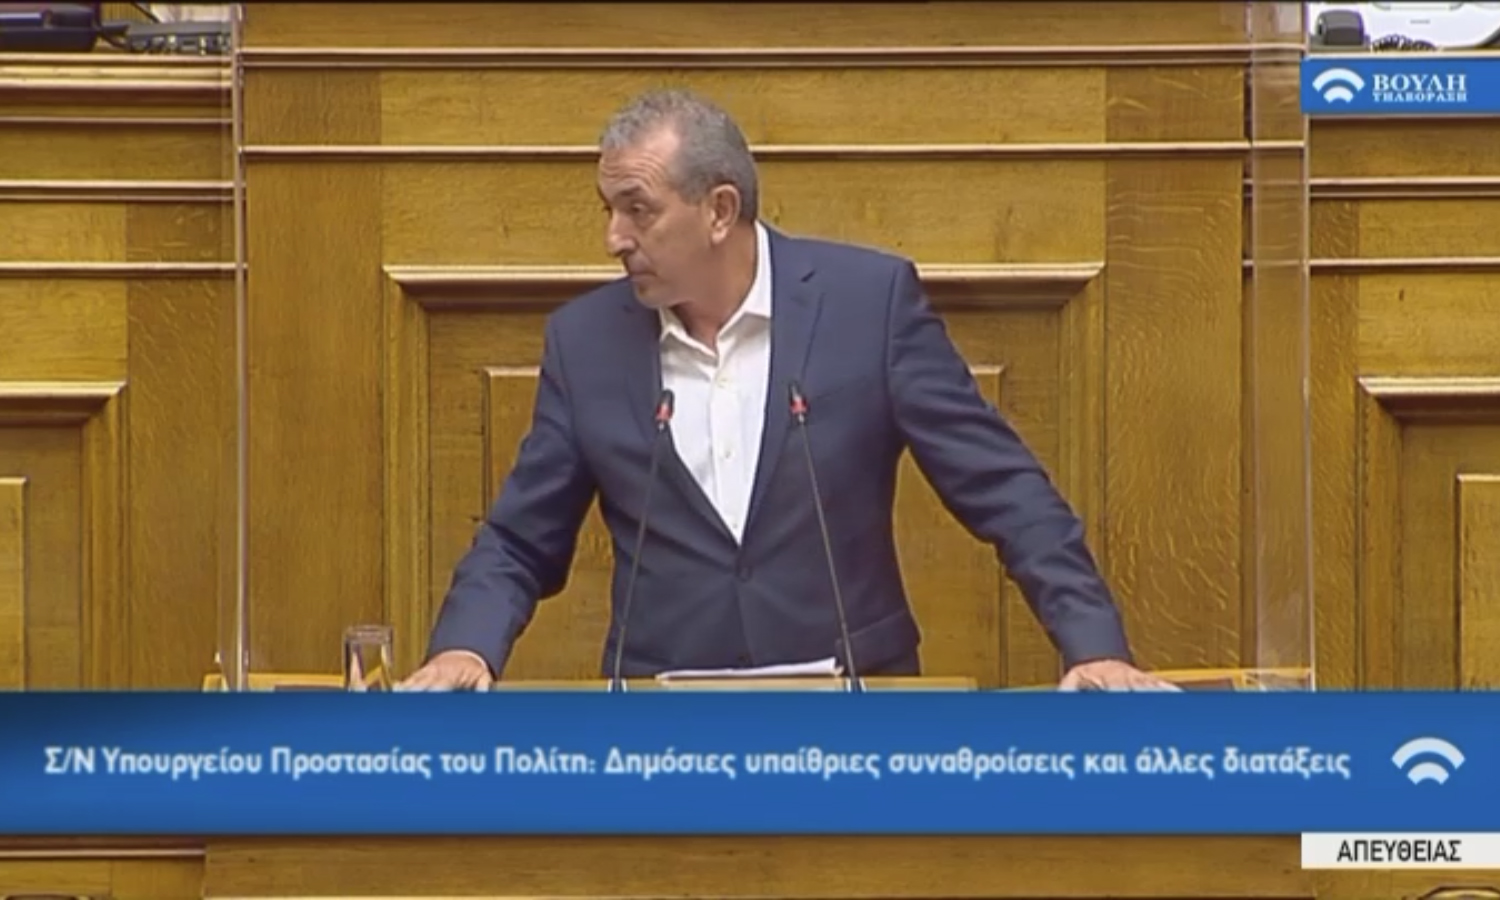 Σ. Βαρδάκης: Όσο και αν προσπαθείτε να φιμώσετε τον ελληνικό λαό, δεν πρόκειται να τα καταφέρετε - βίντεο